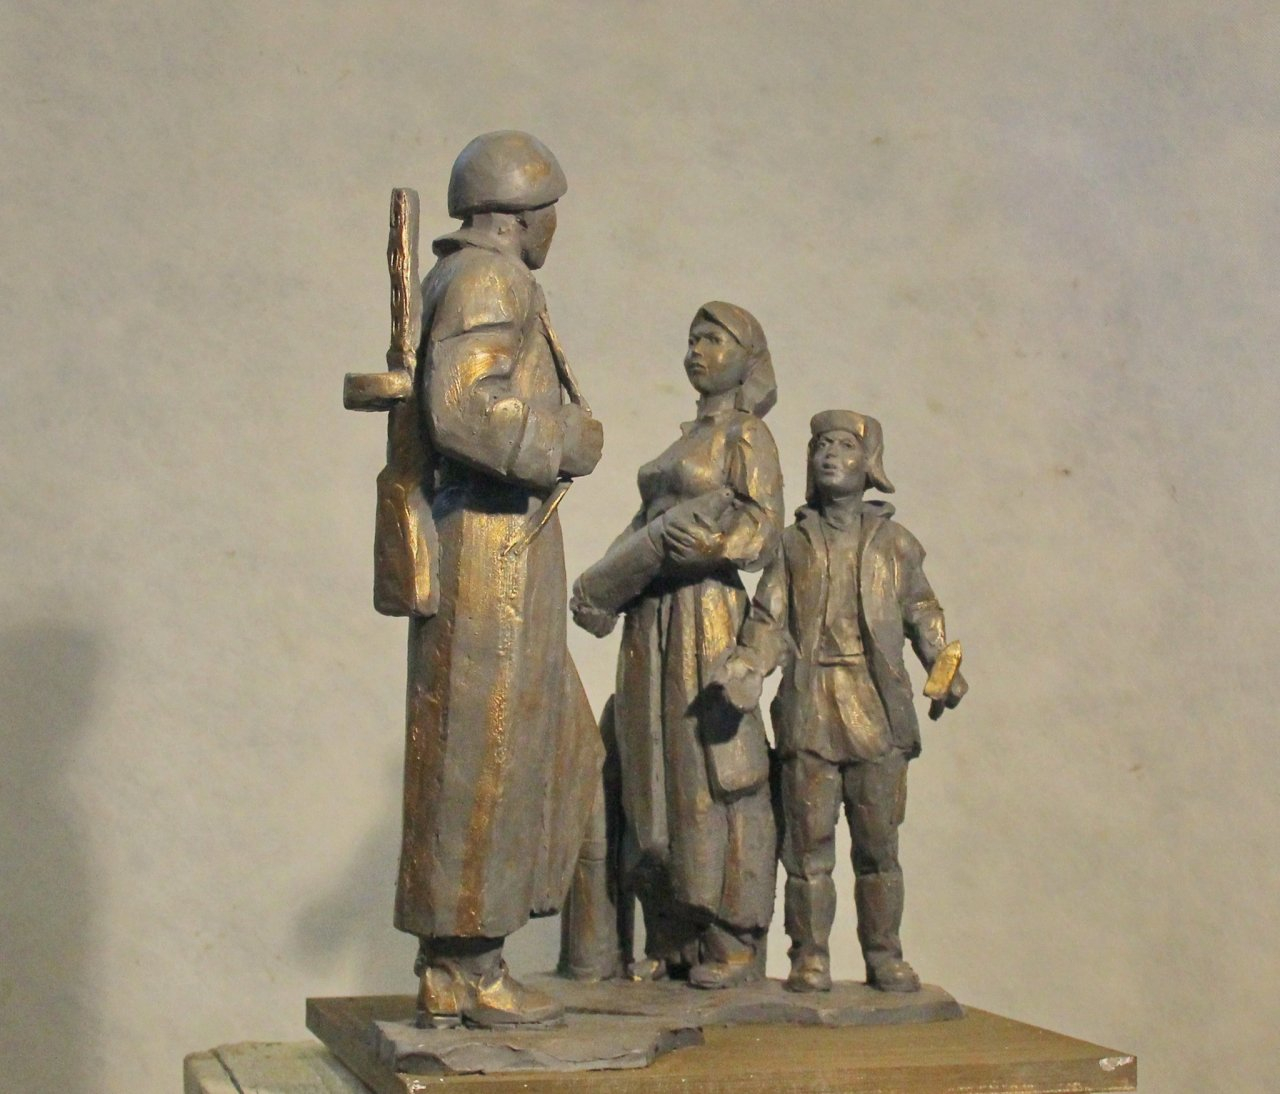 Памятник воинам-освободителям хотят поставить в Дзержинске